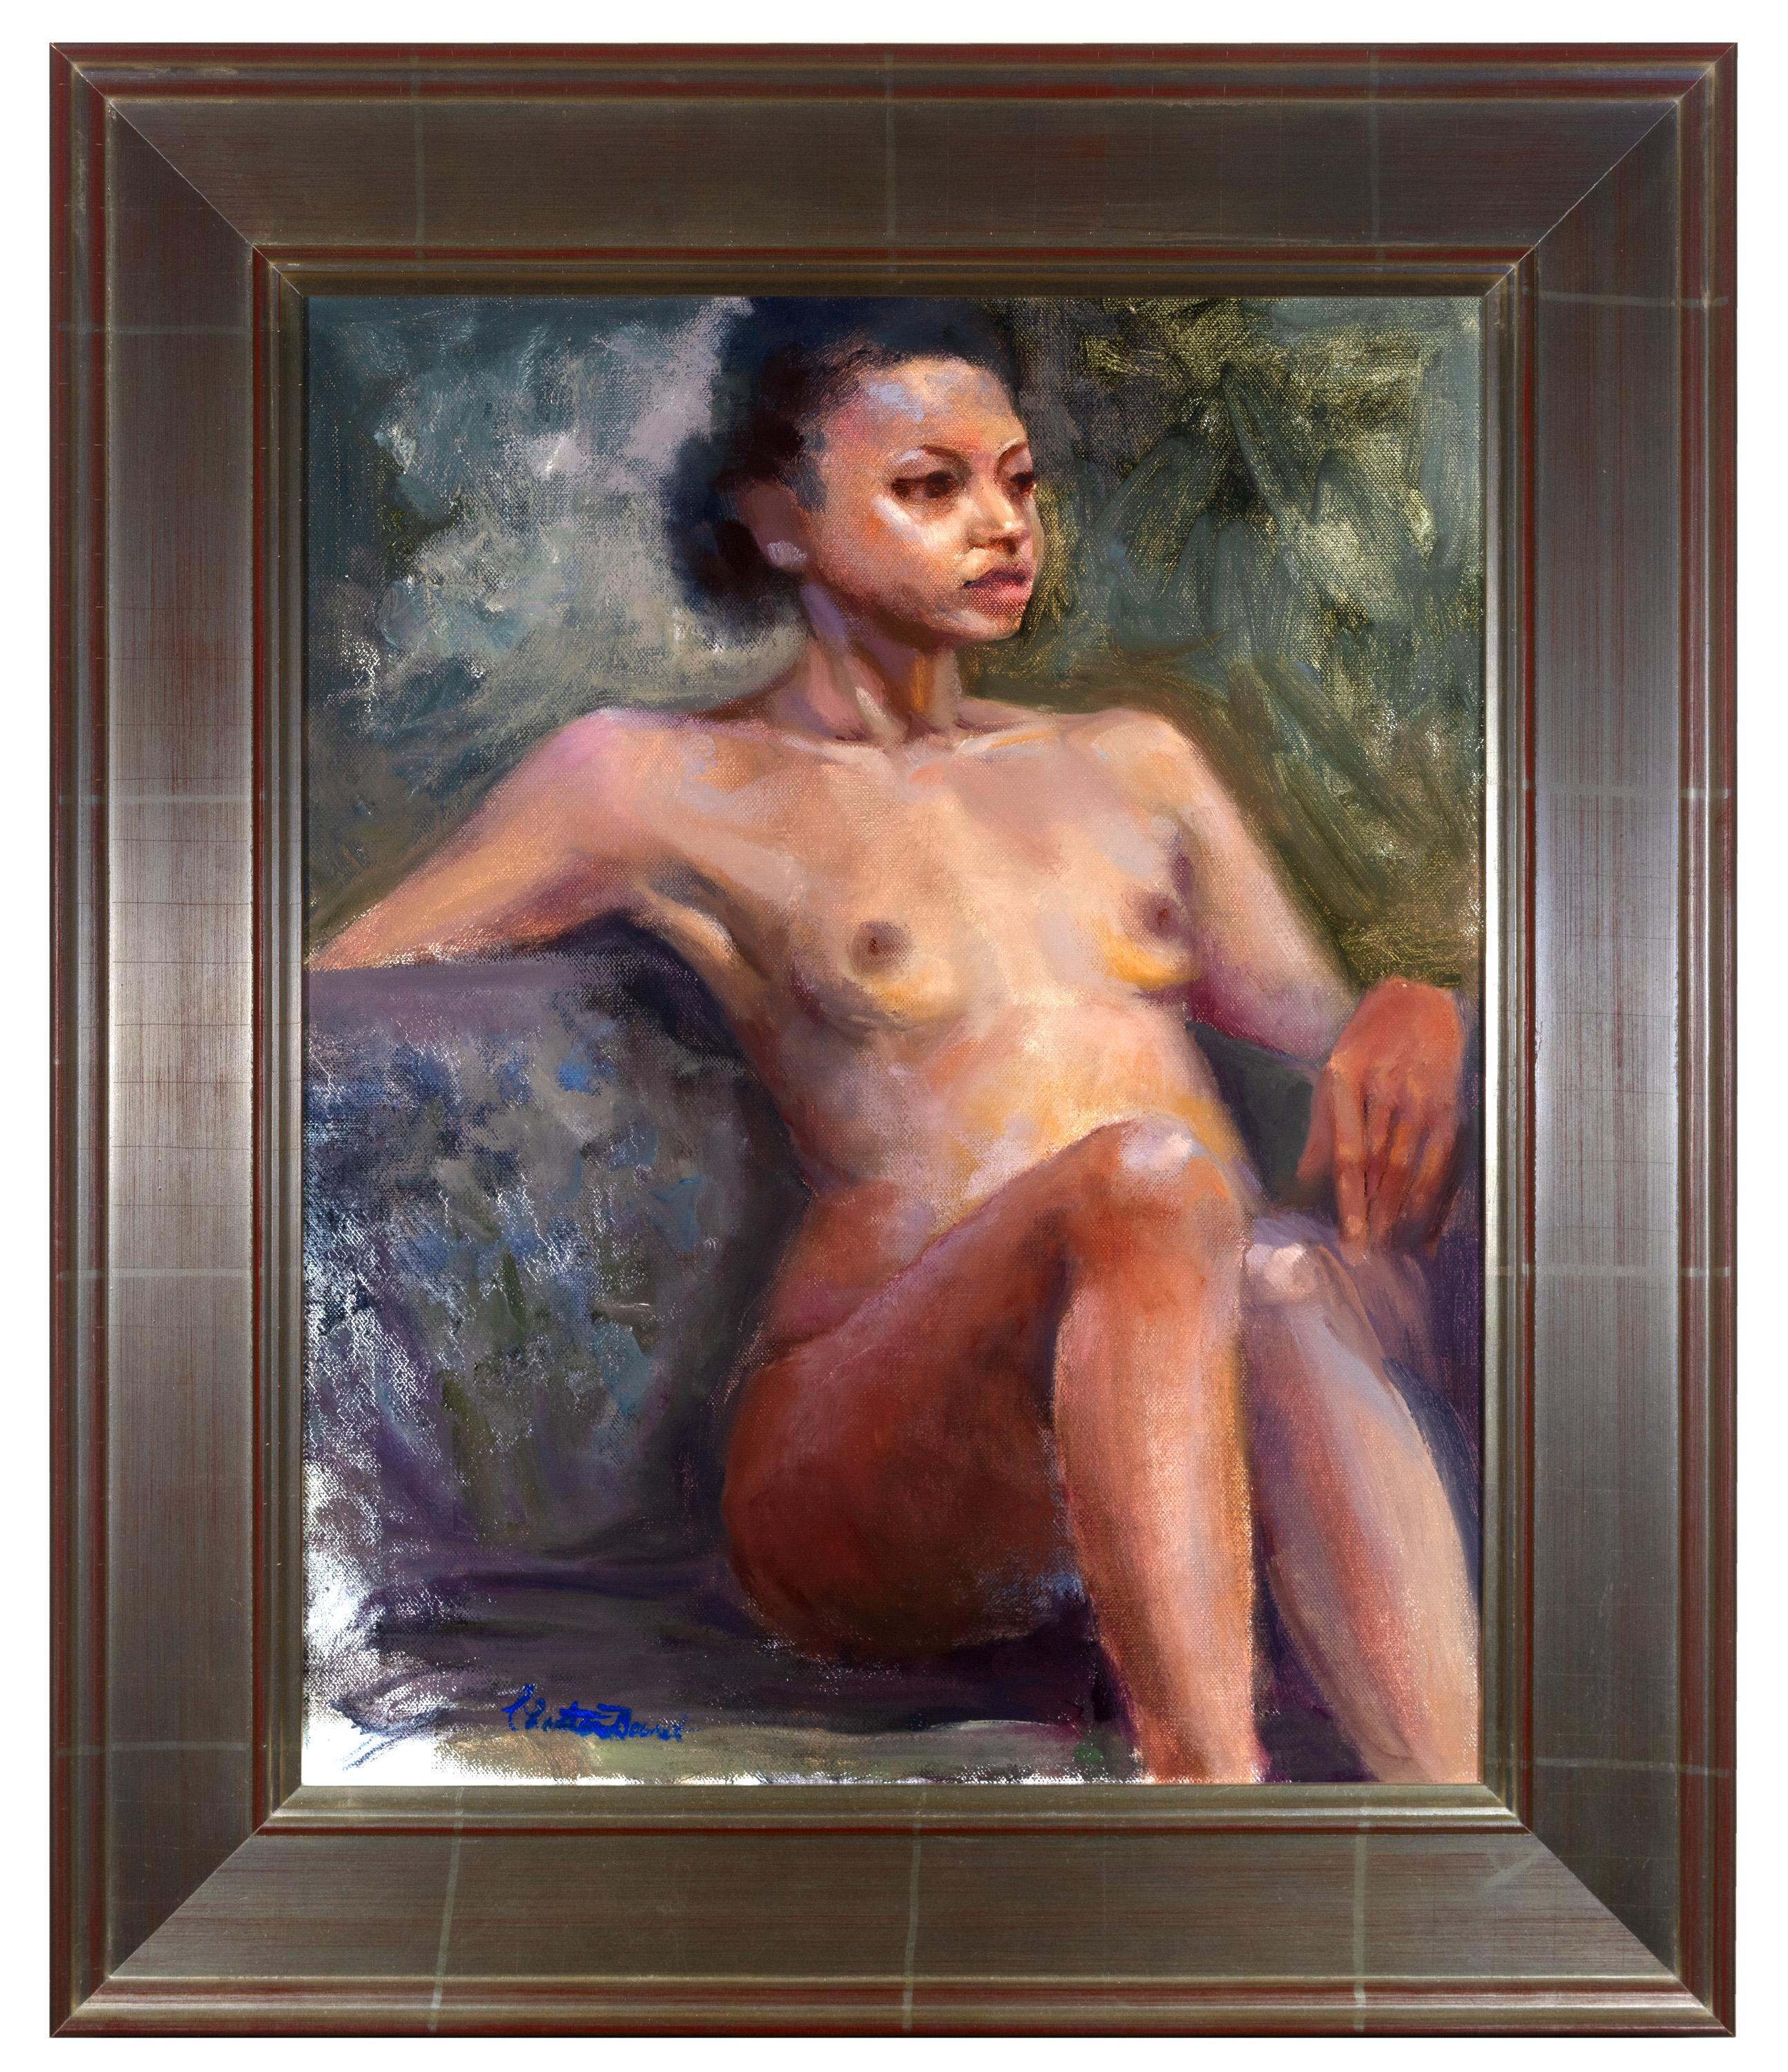 Christiane Bouret ist eine Malerin, die mit Ölfarbe arbeitet, um figurative Kunstwerke und Porträts zu schaffen, und das vorliegende Gemälde ist ein hervorragendes Beispiel für ihre Arbeit. Auf dem Bild sieht man eine nackte Frau, die sich auf einer